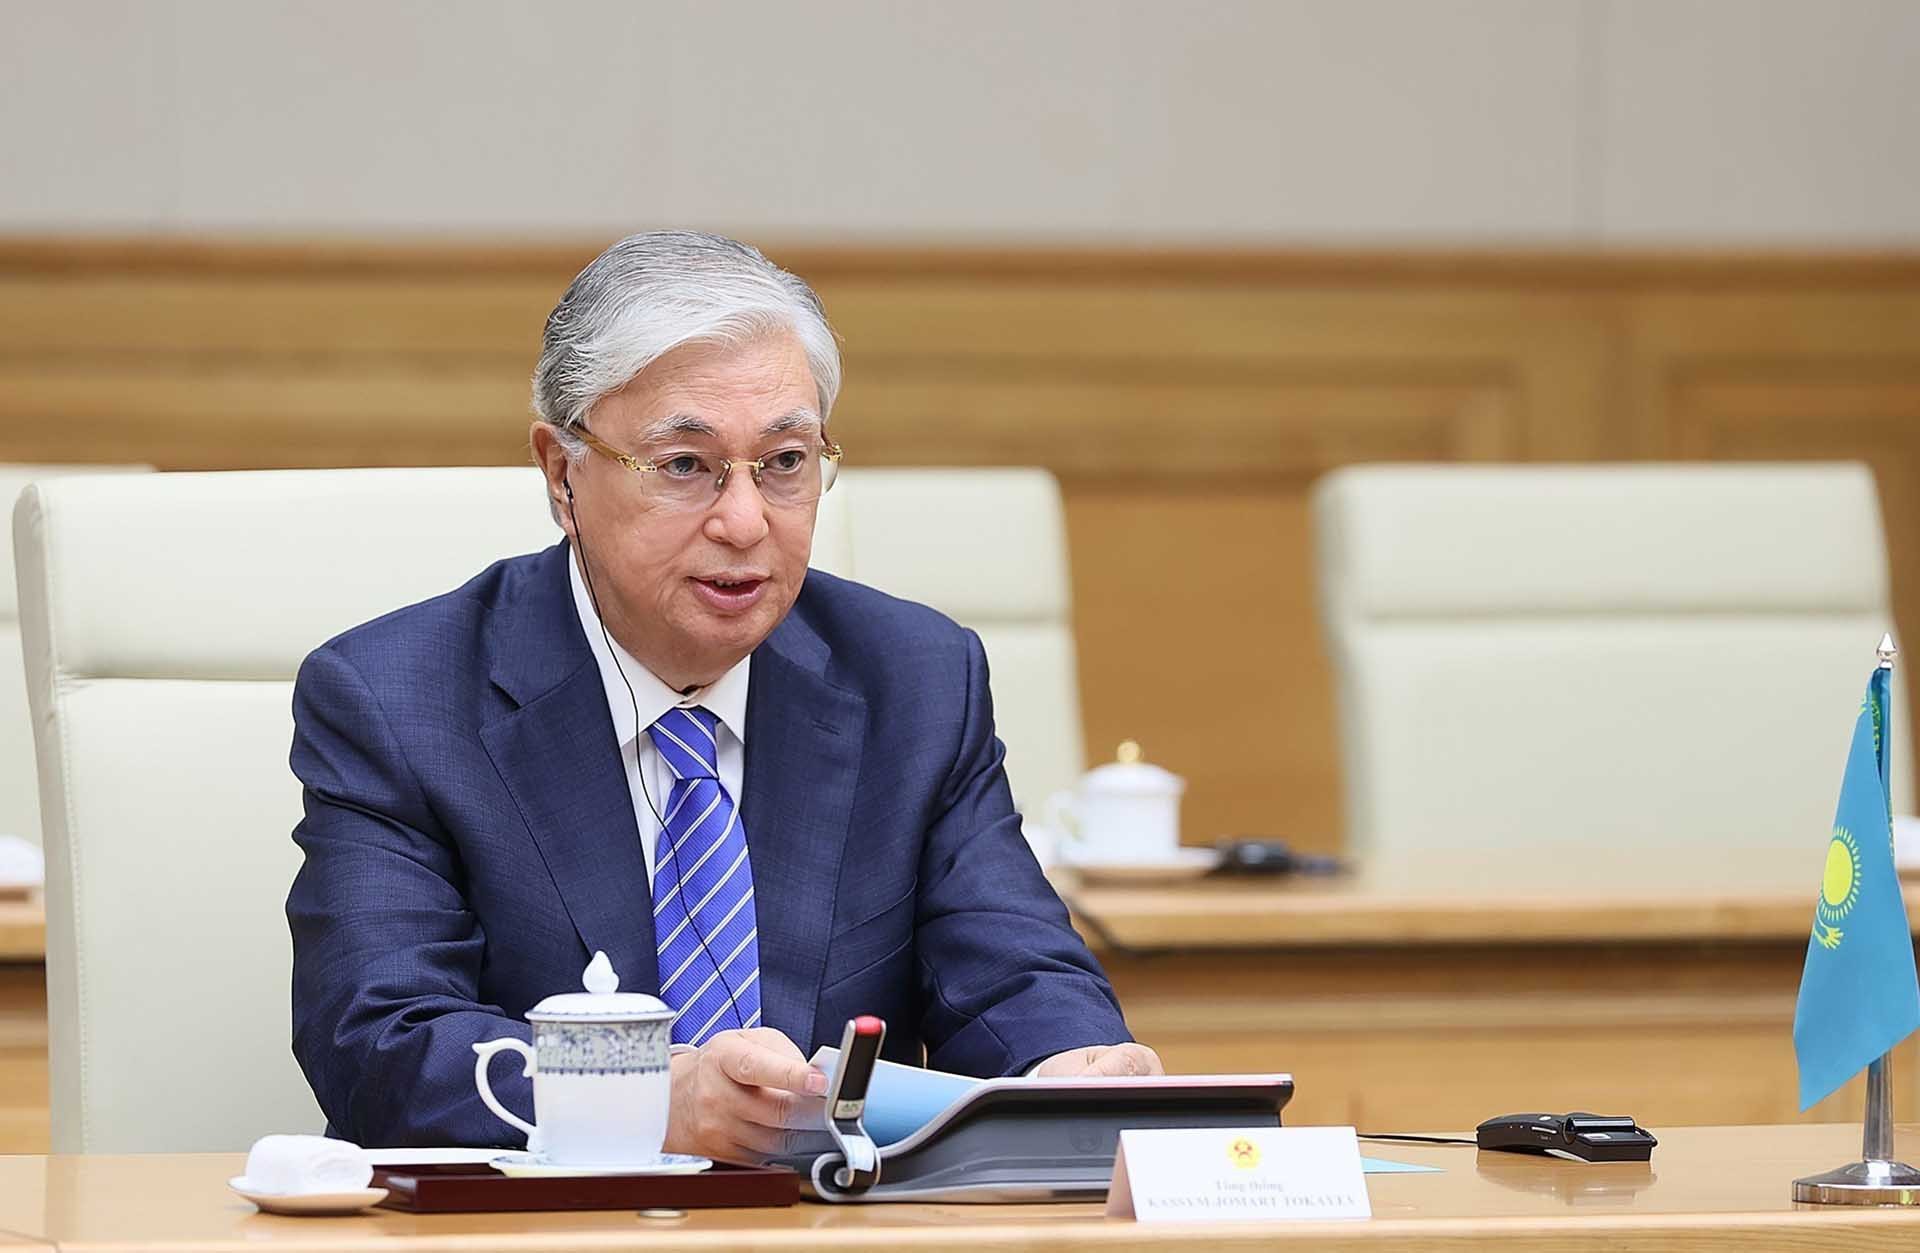 Thủ tướng Phạm Minh Chính hội kiến Tổng thống Kazakhstan